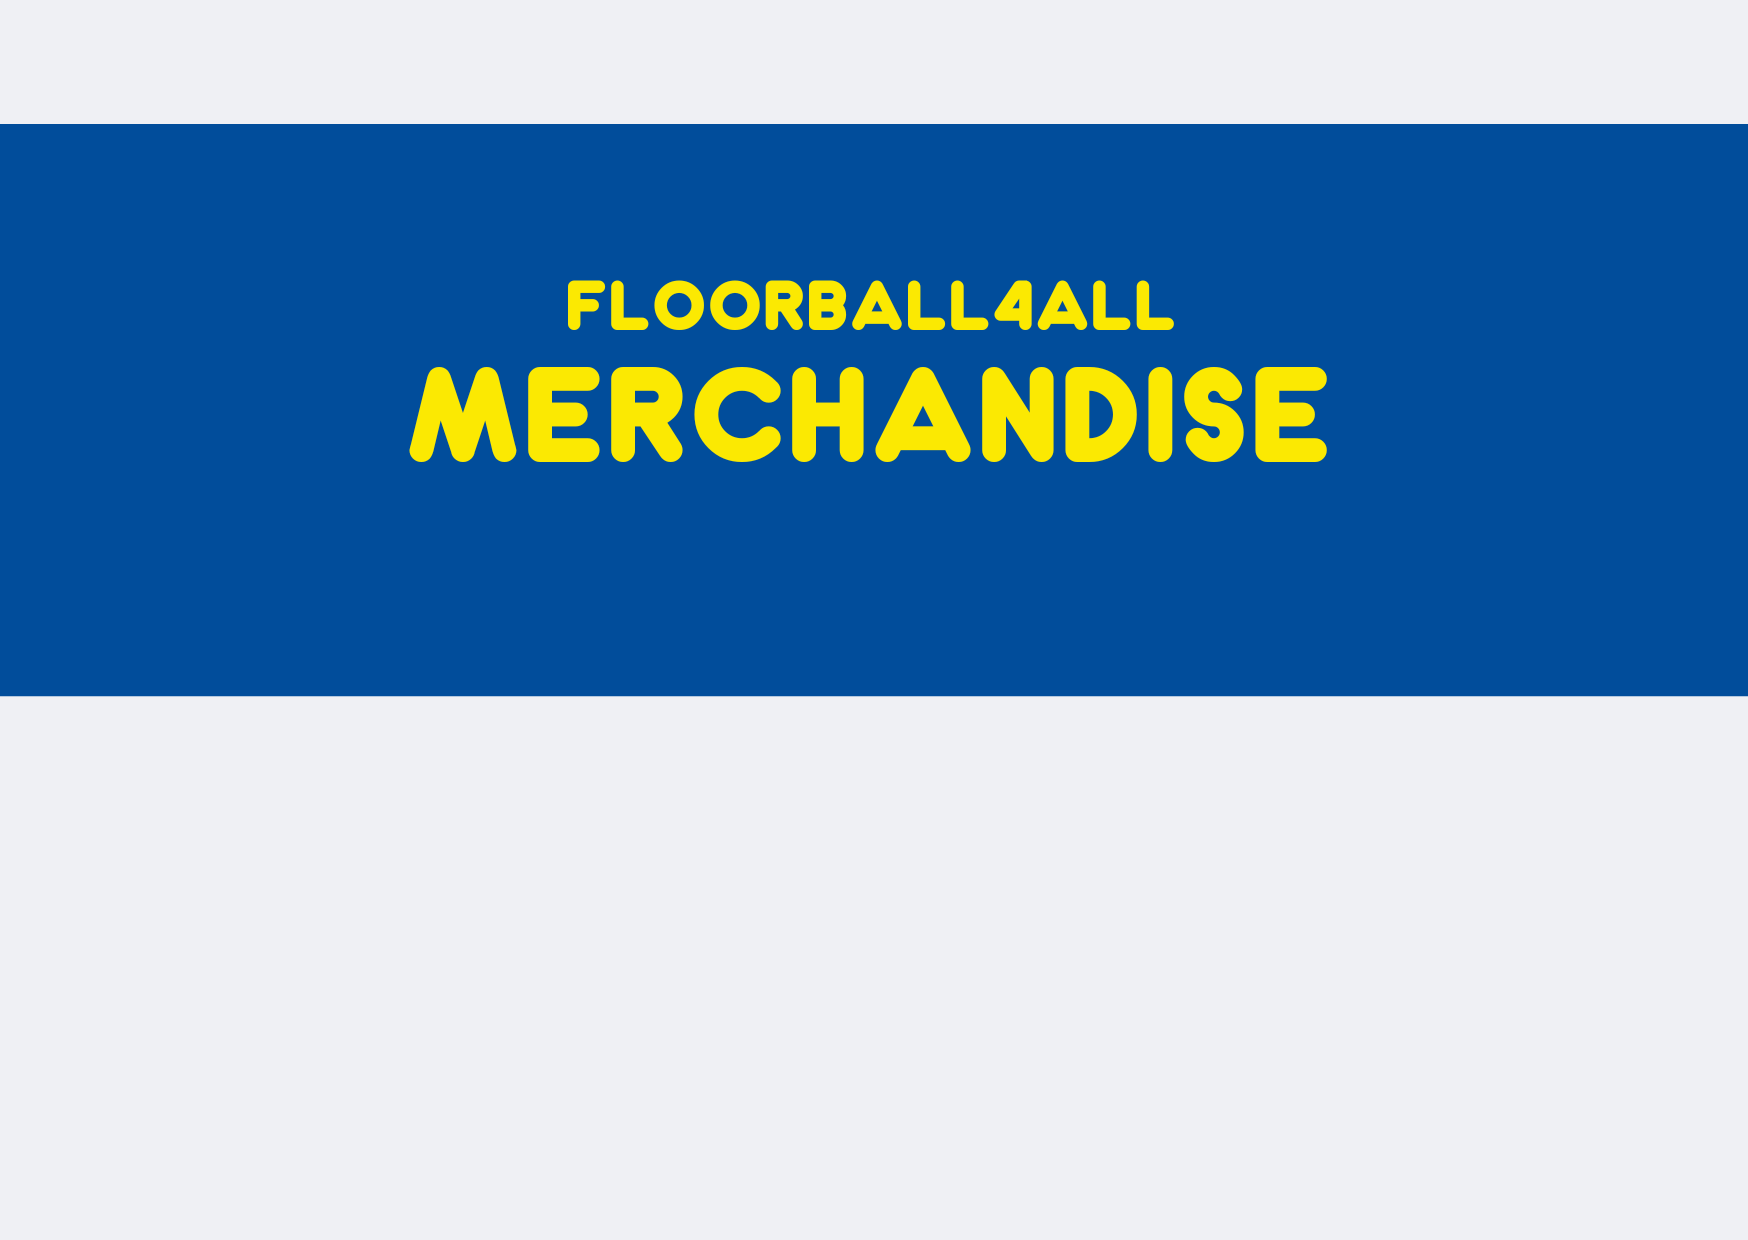 Floorball4all Merchandise